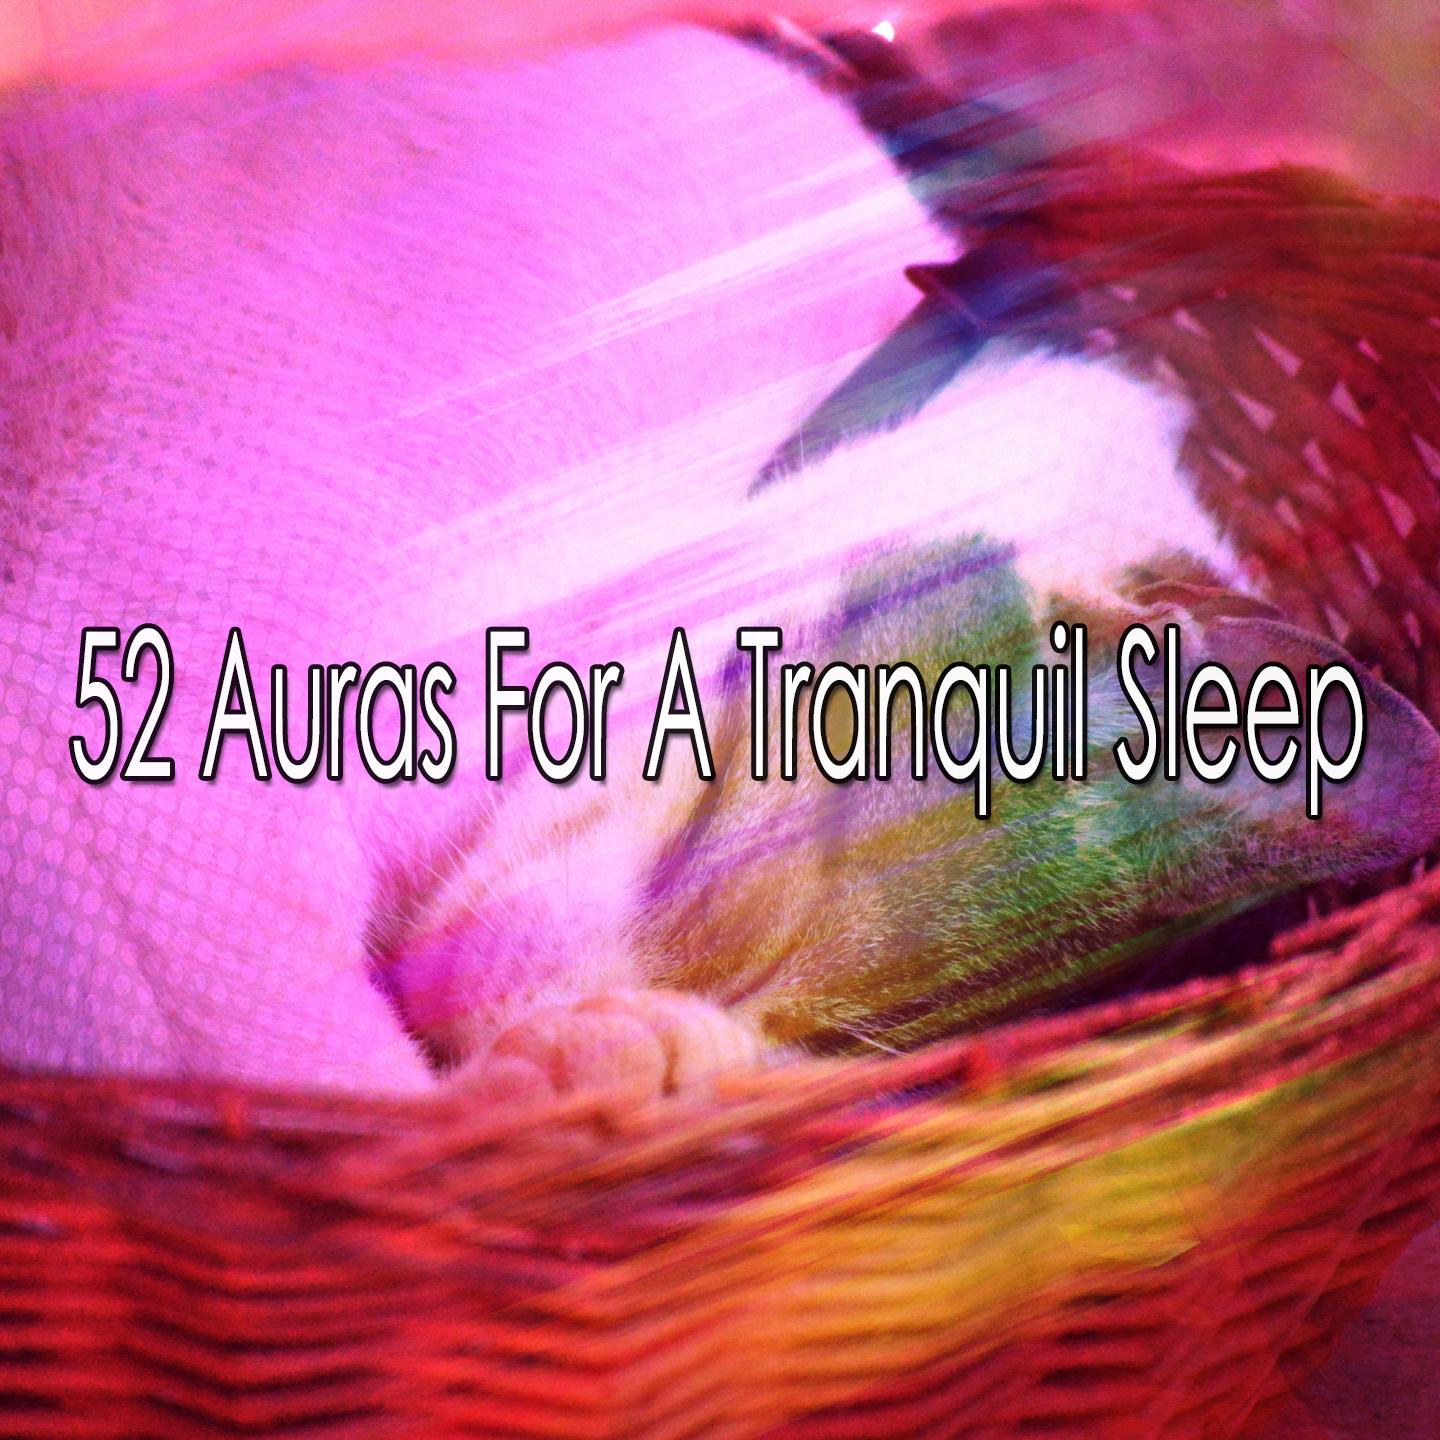 52 Auras For A Tranquil Sleep